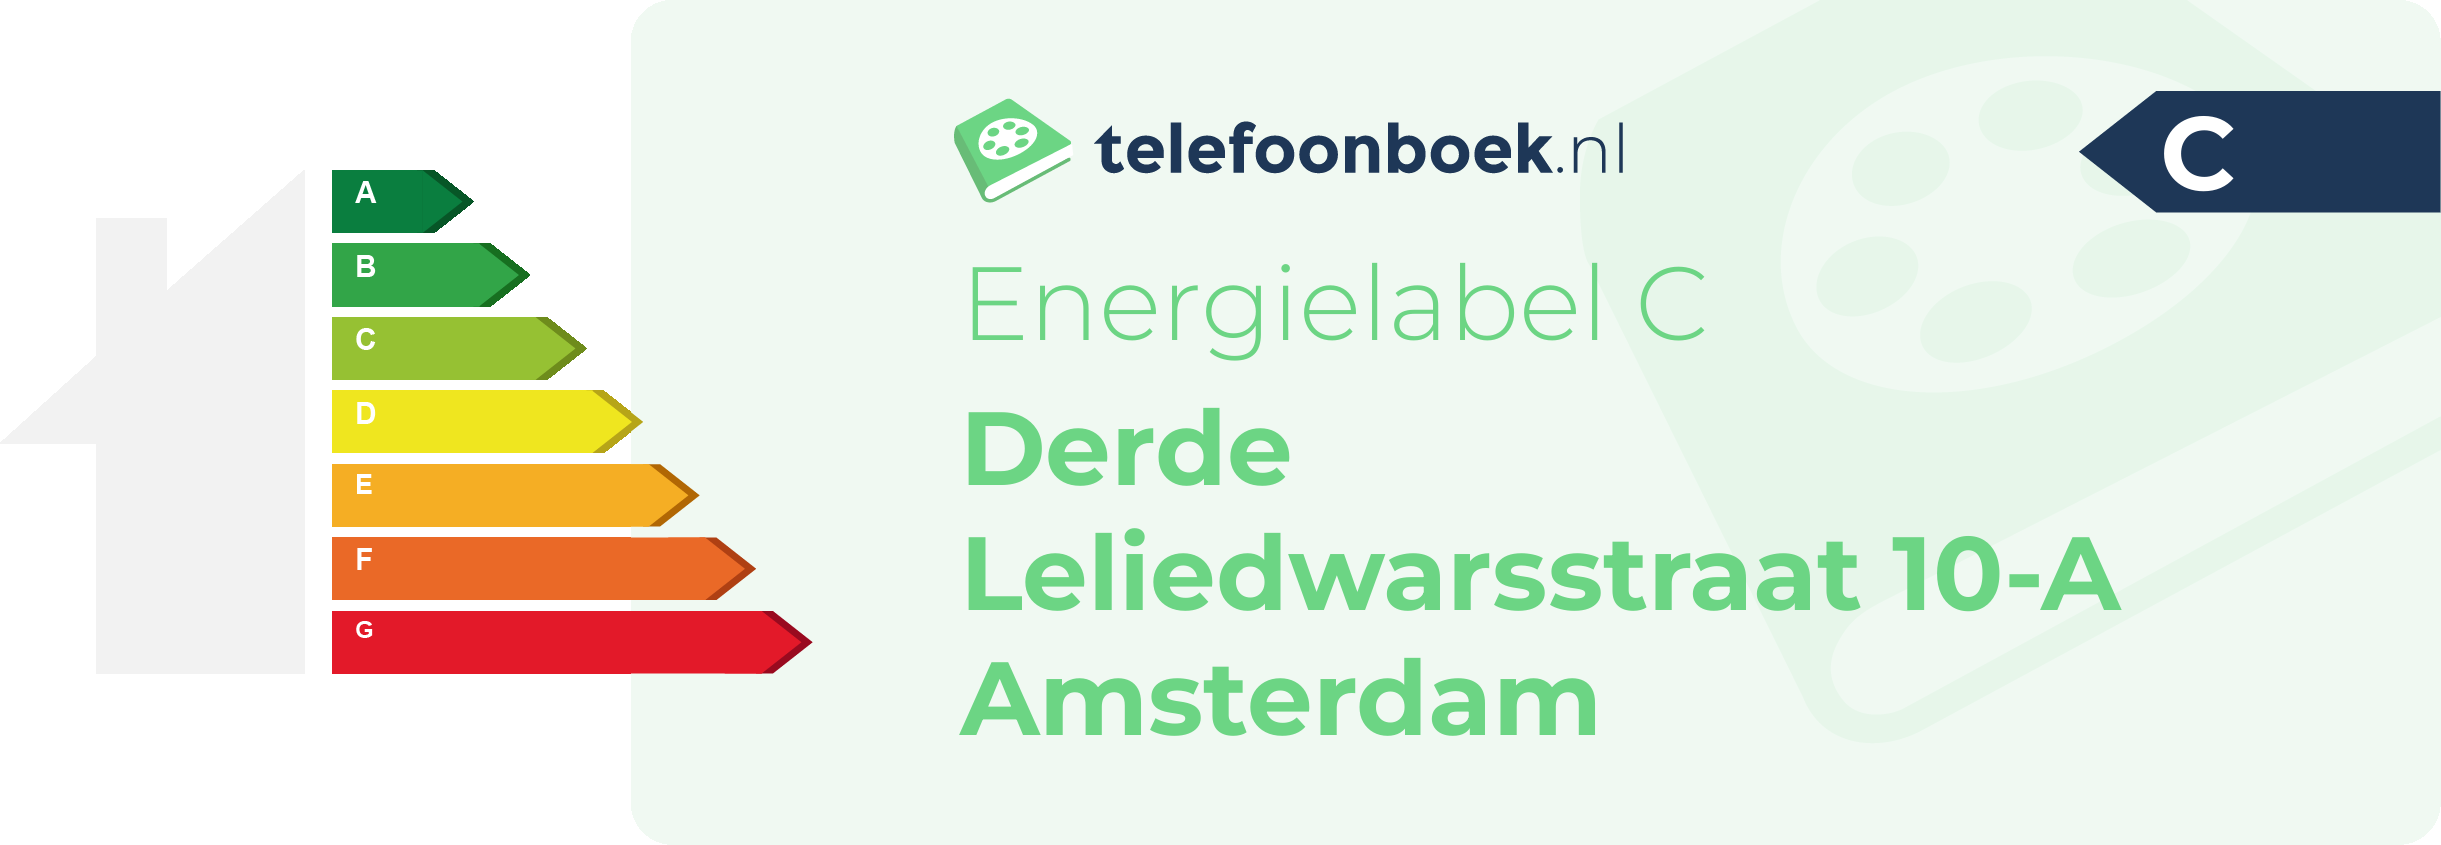 Energielabel Derde Leliedwarsstraat 10-A Amsterdam